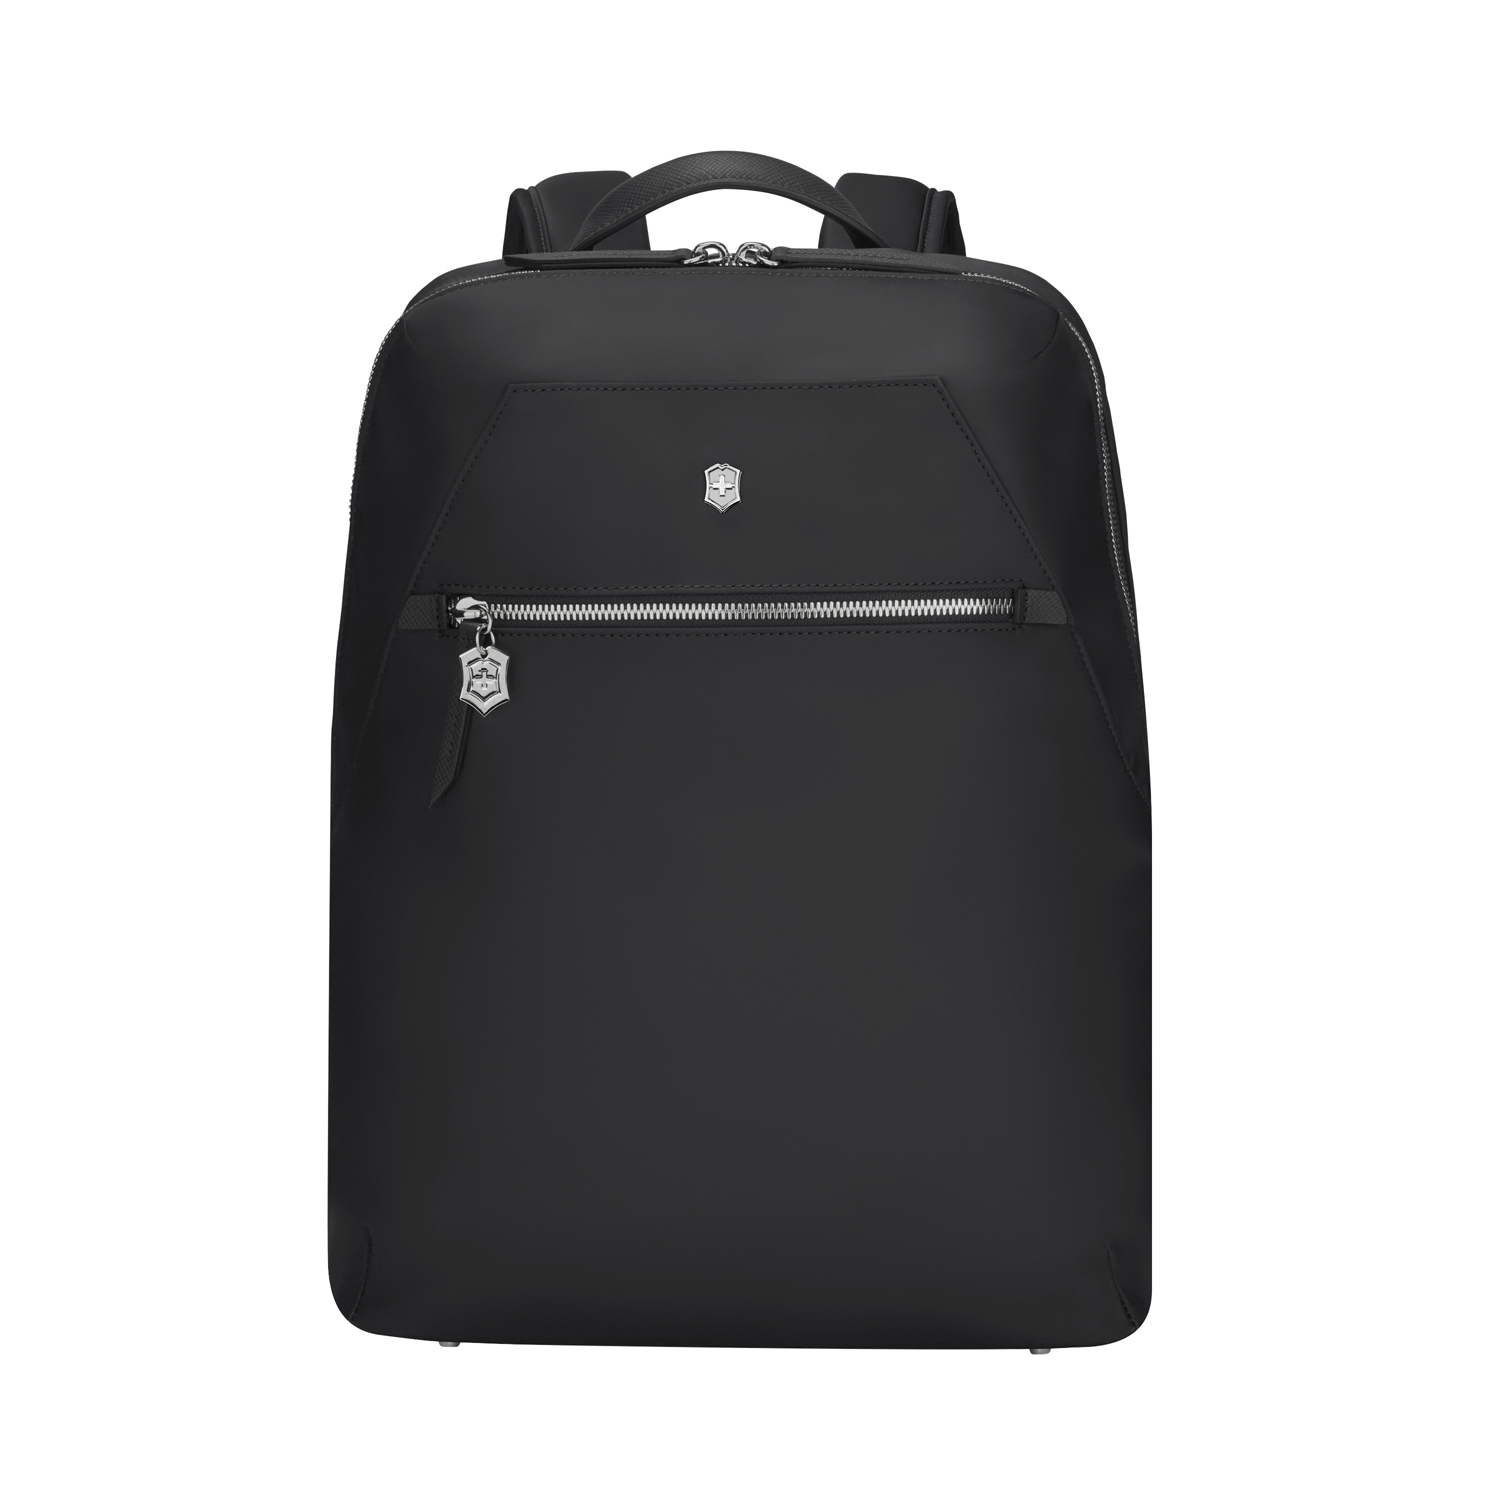 Рюкзак VICTORINOX Victoria Signature Compact Backpack, черный, нейлон/кожа, 30x16x38 см